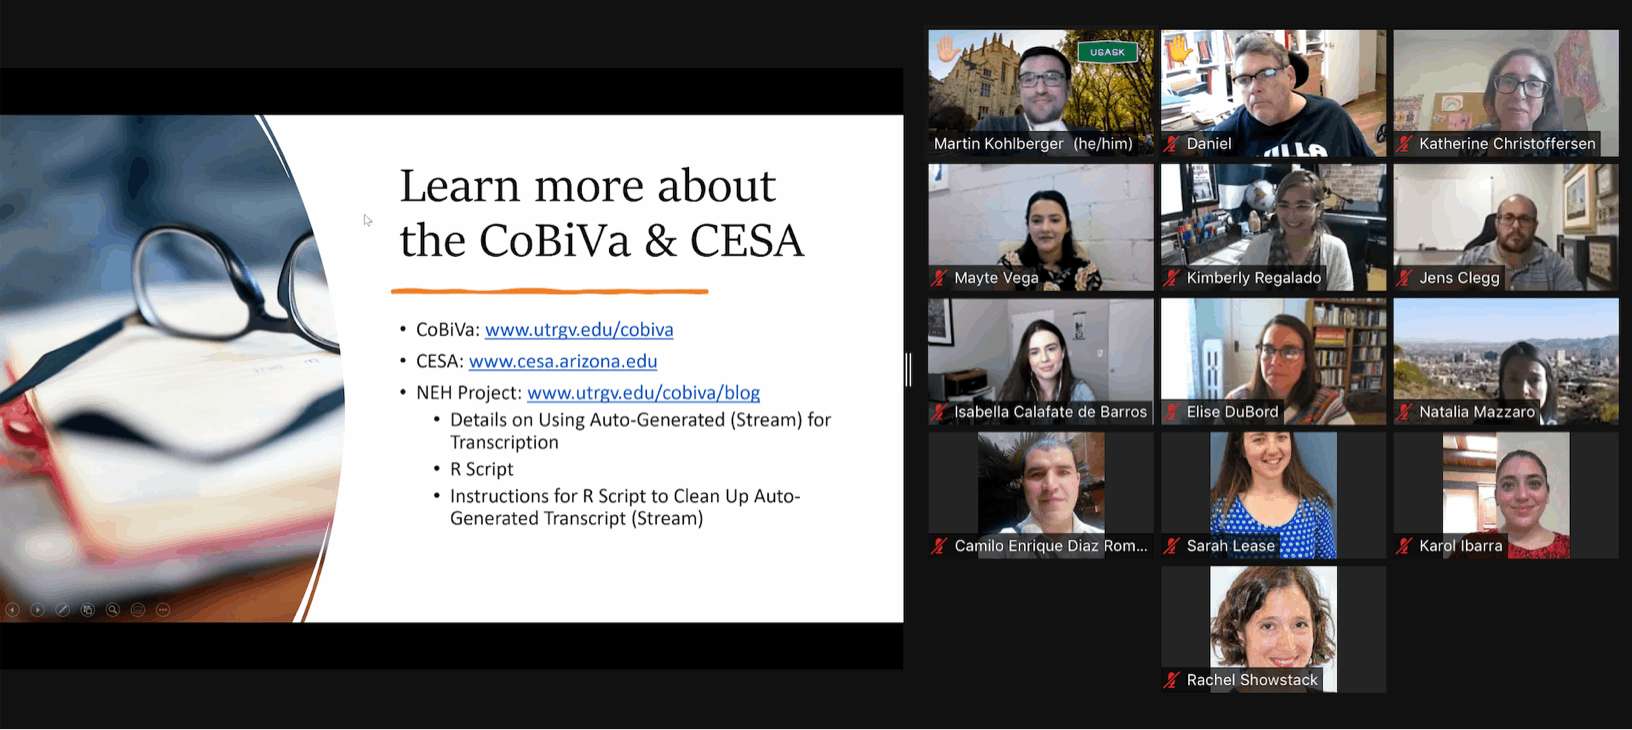 CoBiVa at LASSO 2021 post content graphic.